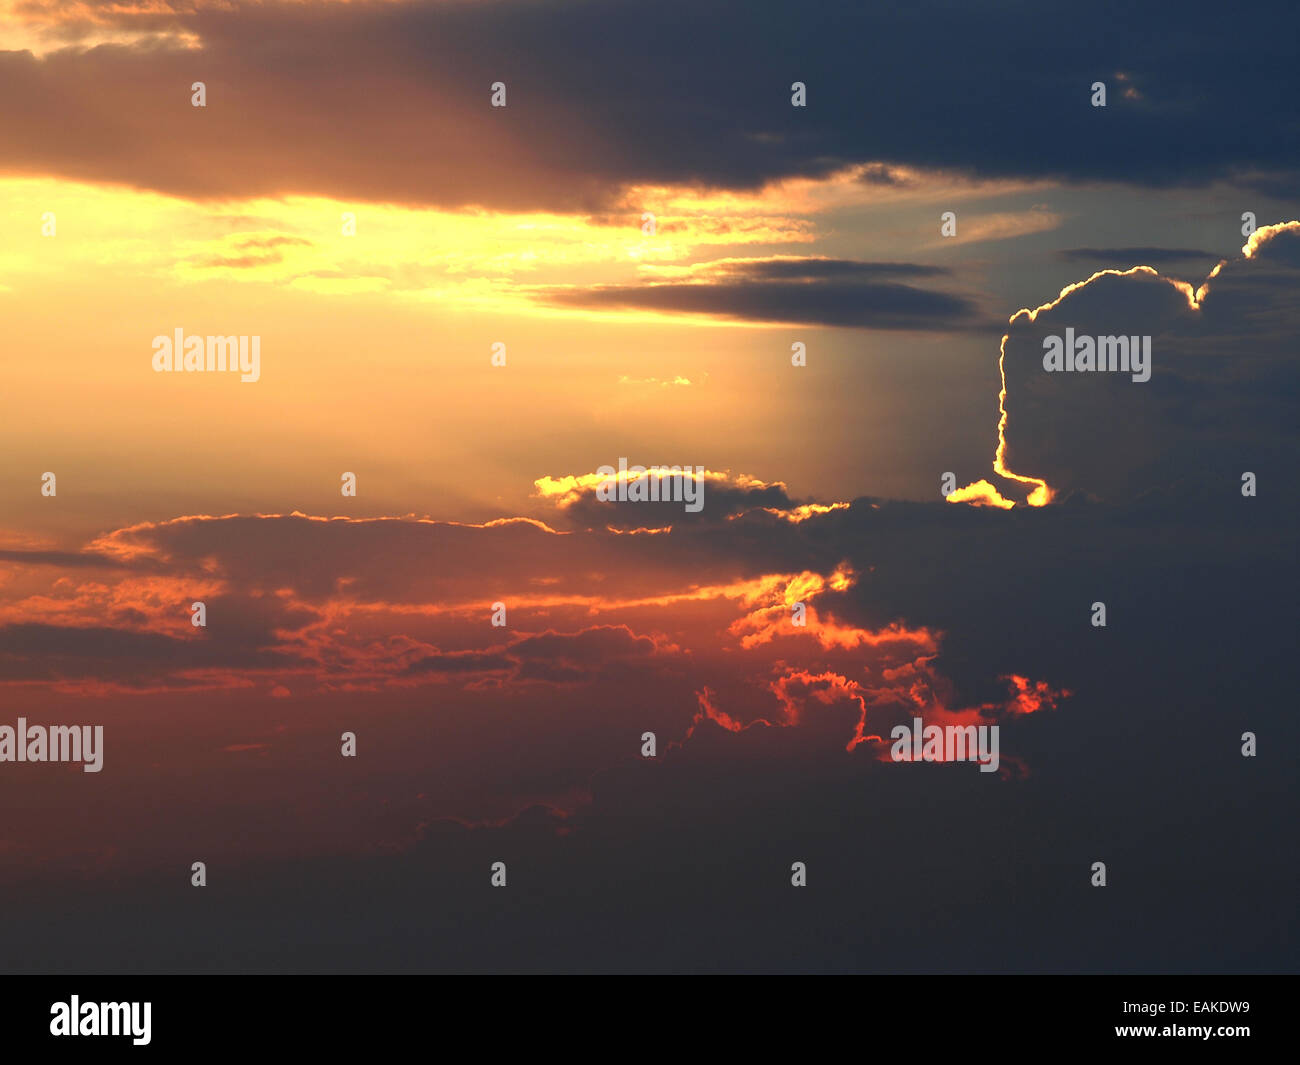 Sunset / sunrise con nuvole, raggi di luce e altri effetti atmosferici Foto Stock